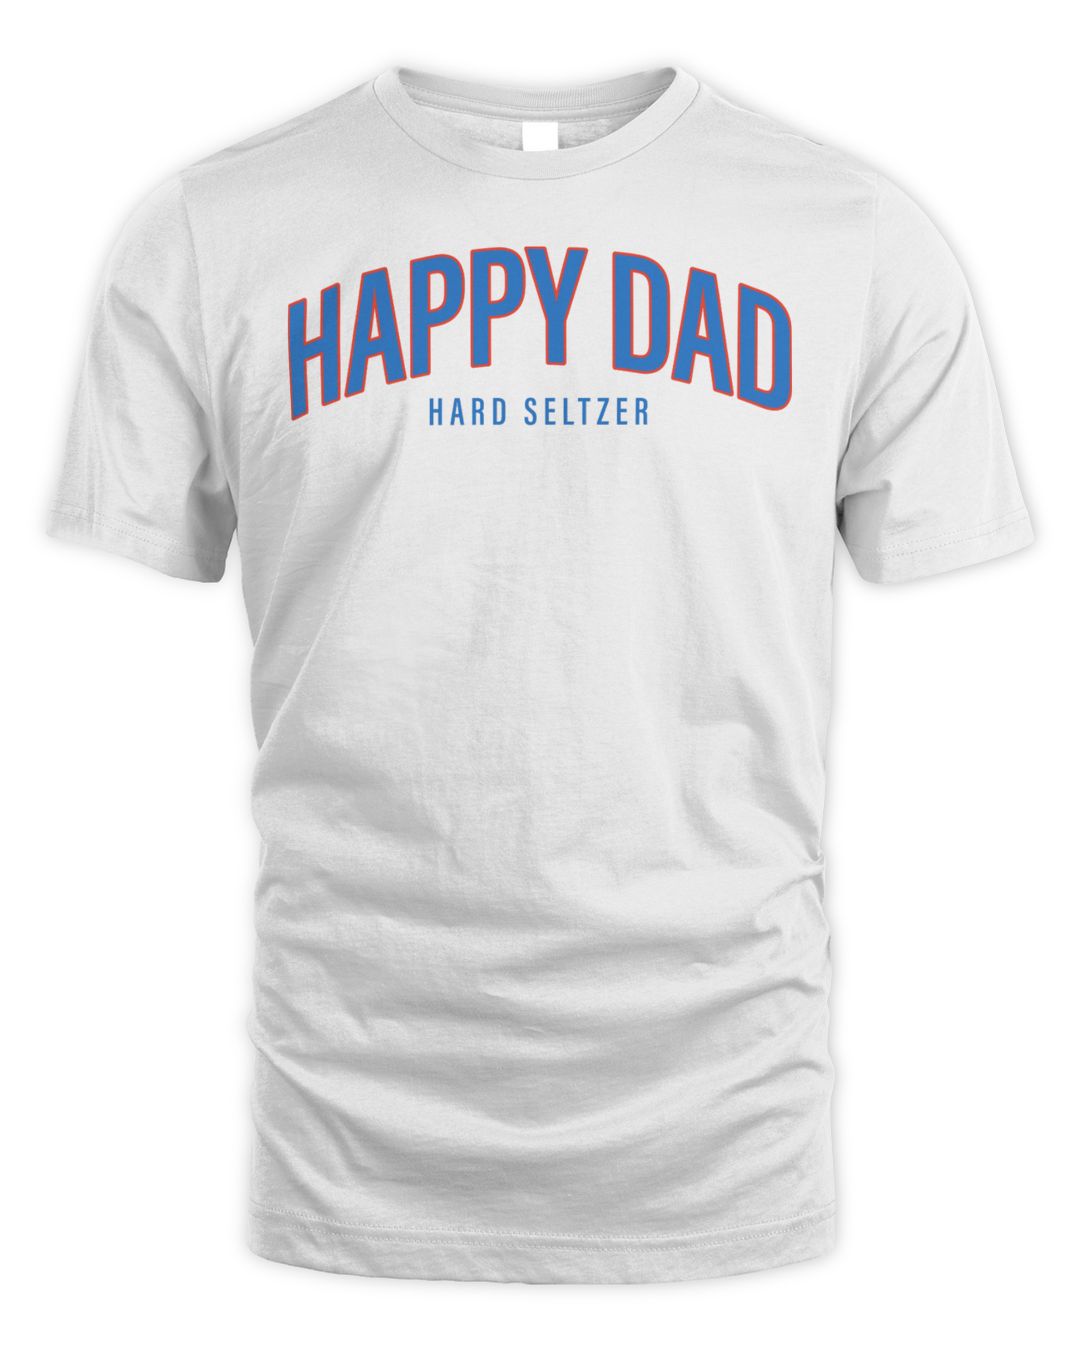 Fullsend Merch Happy Dad Shirt 2aN